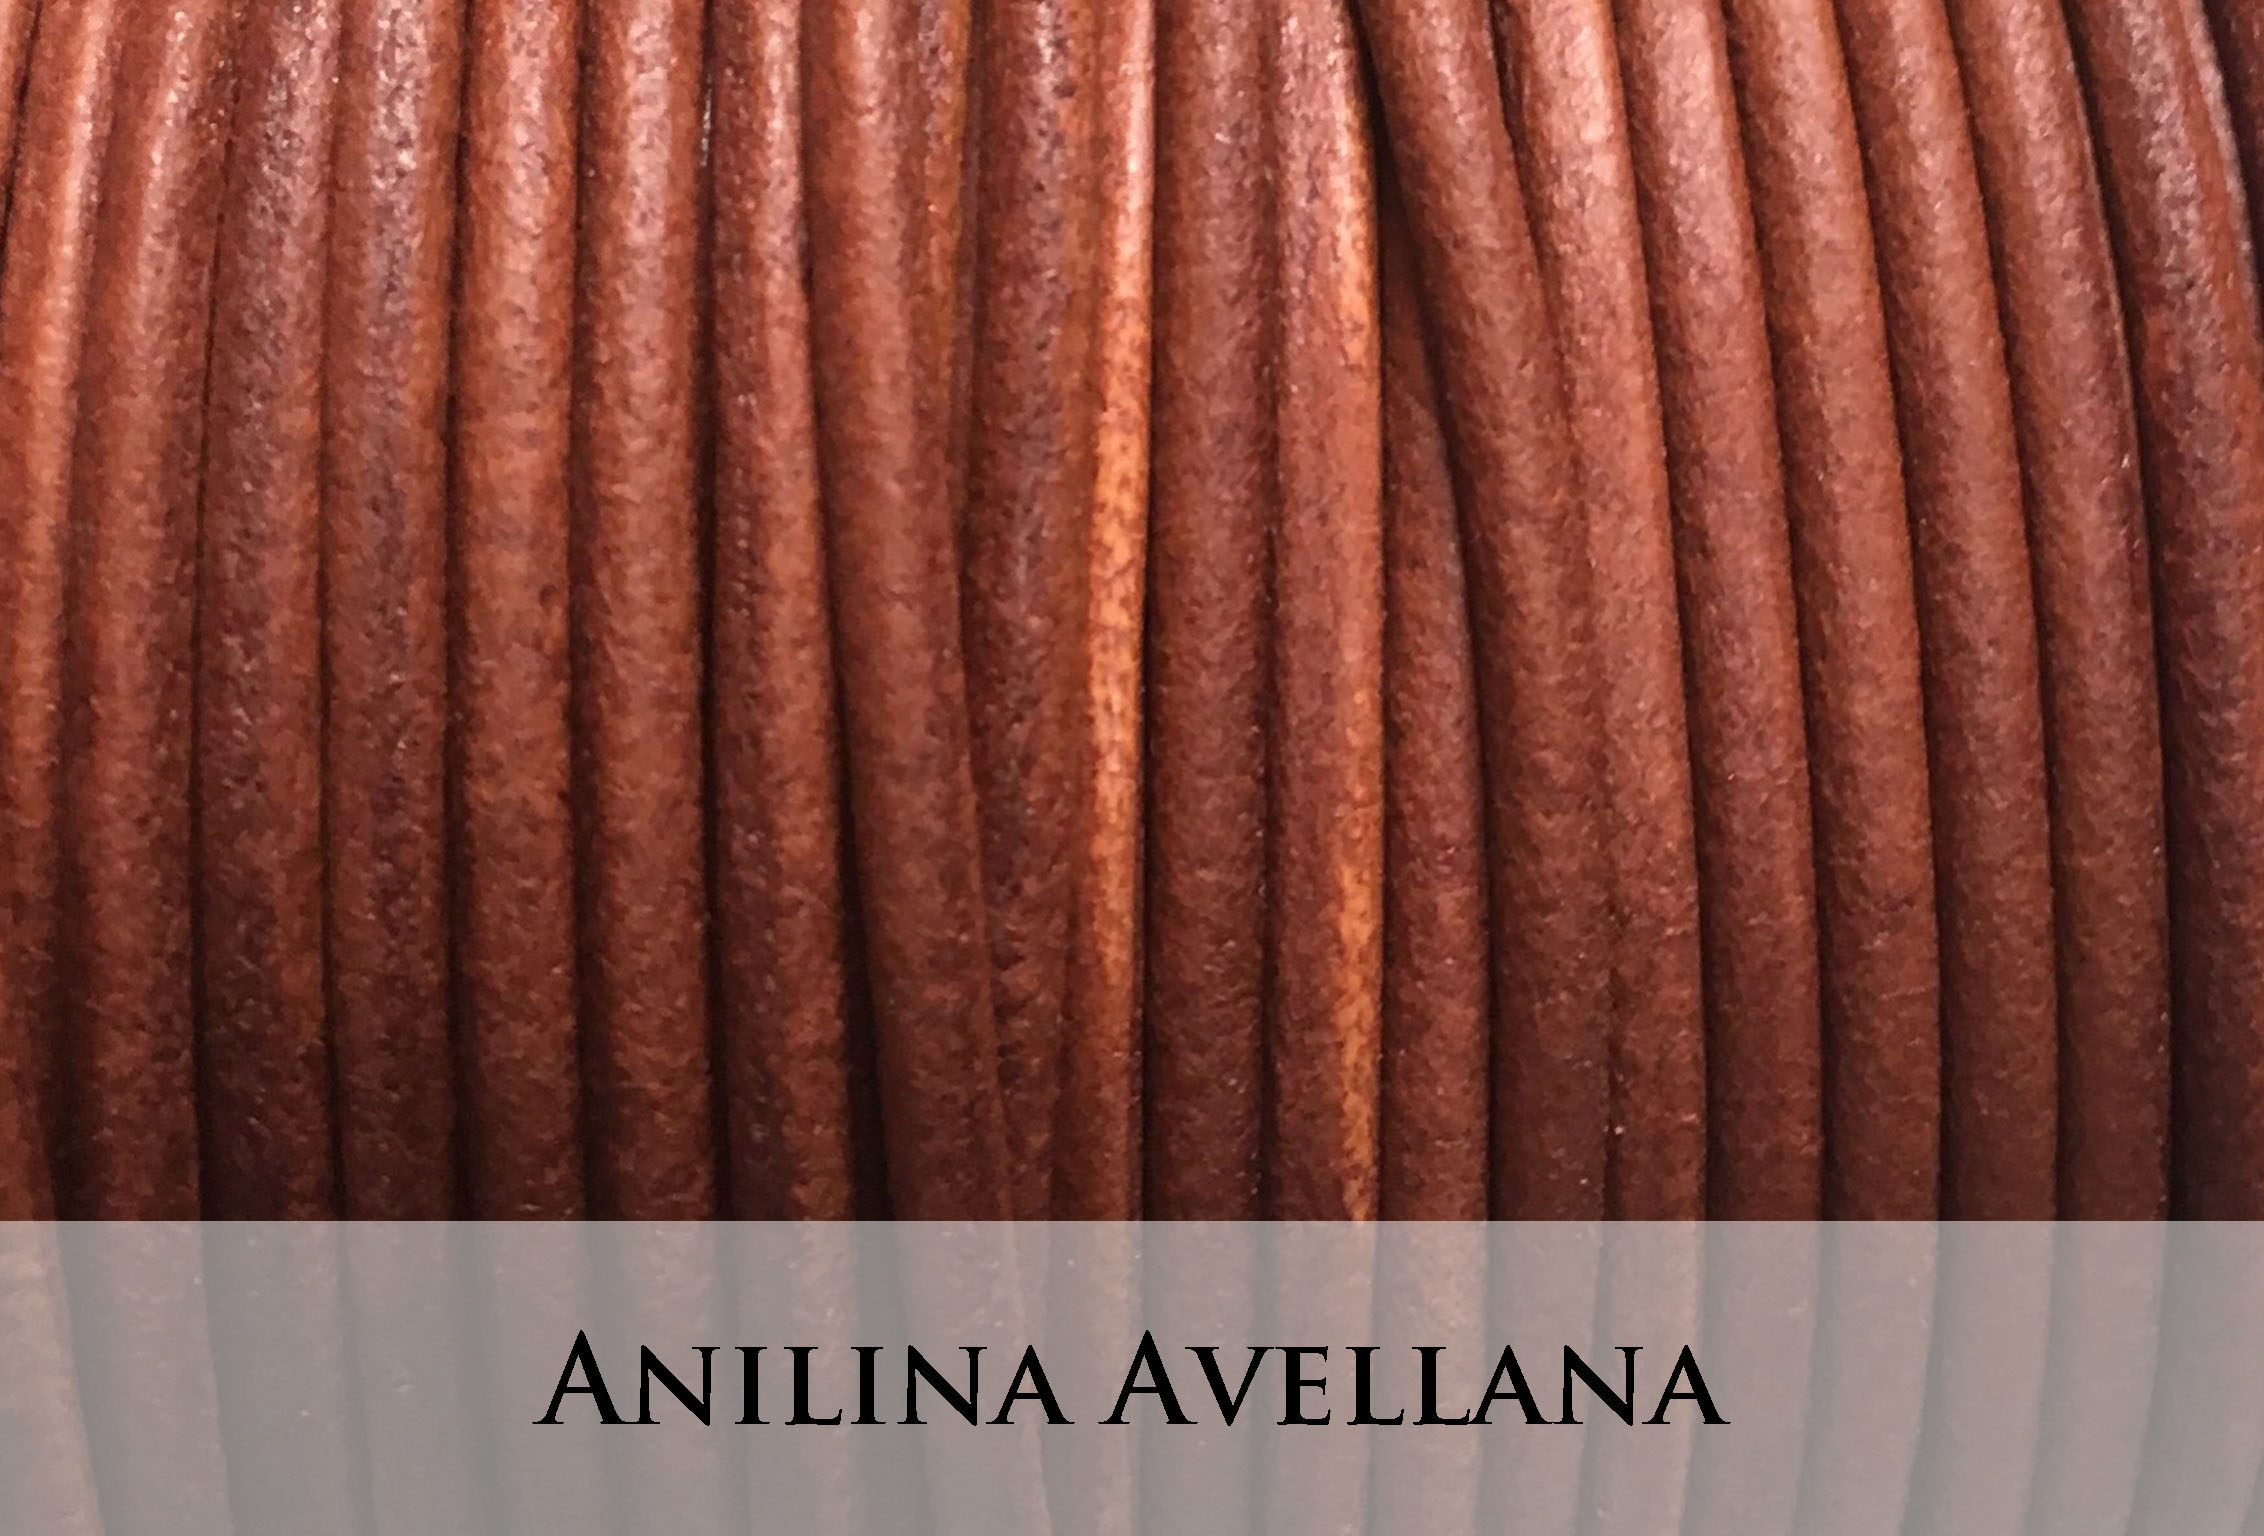 Anilina Avellana